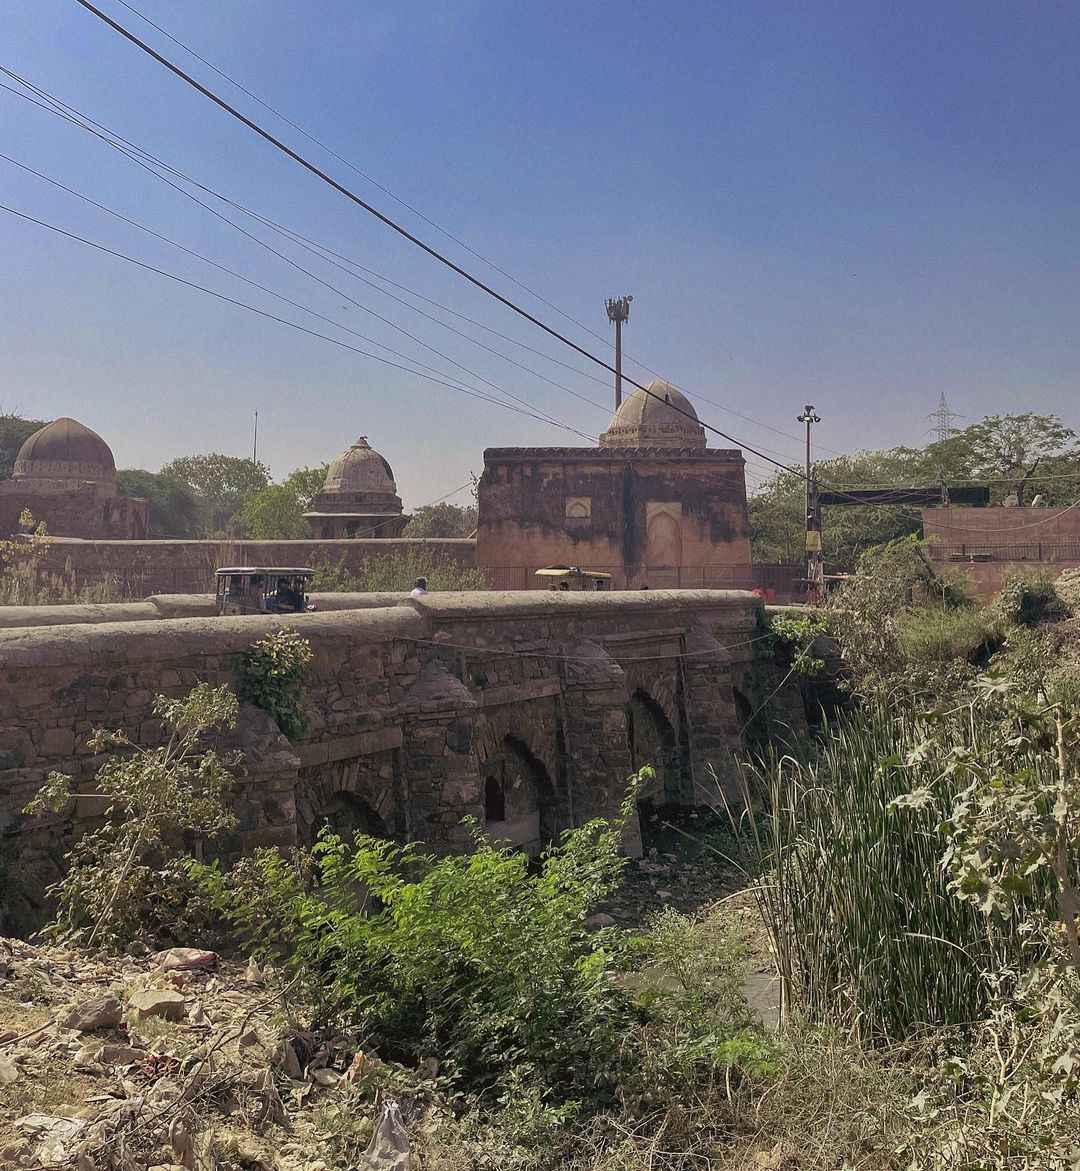 Bridge by Firoz Shah Tughlaq